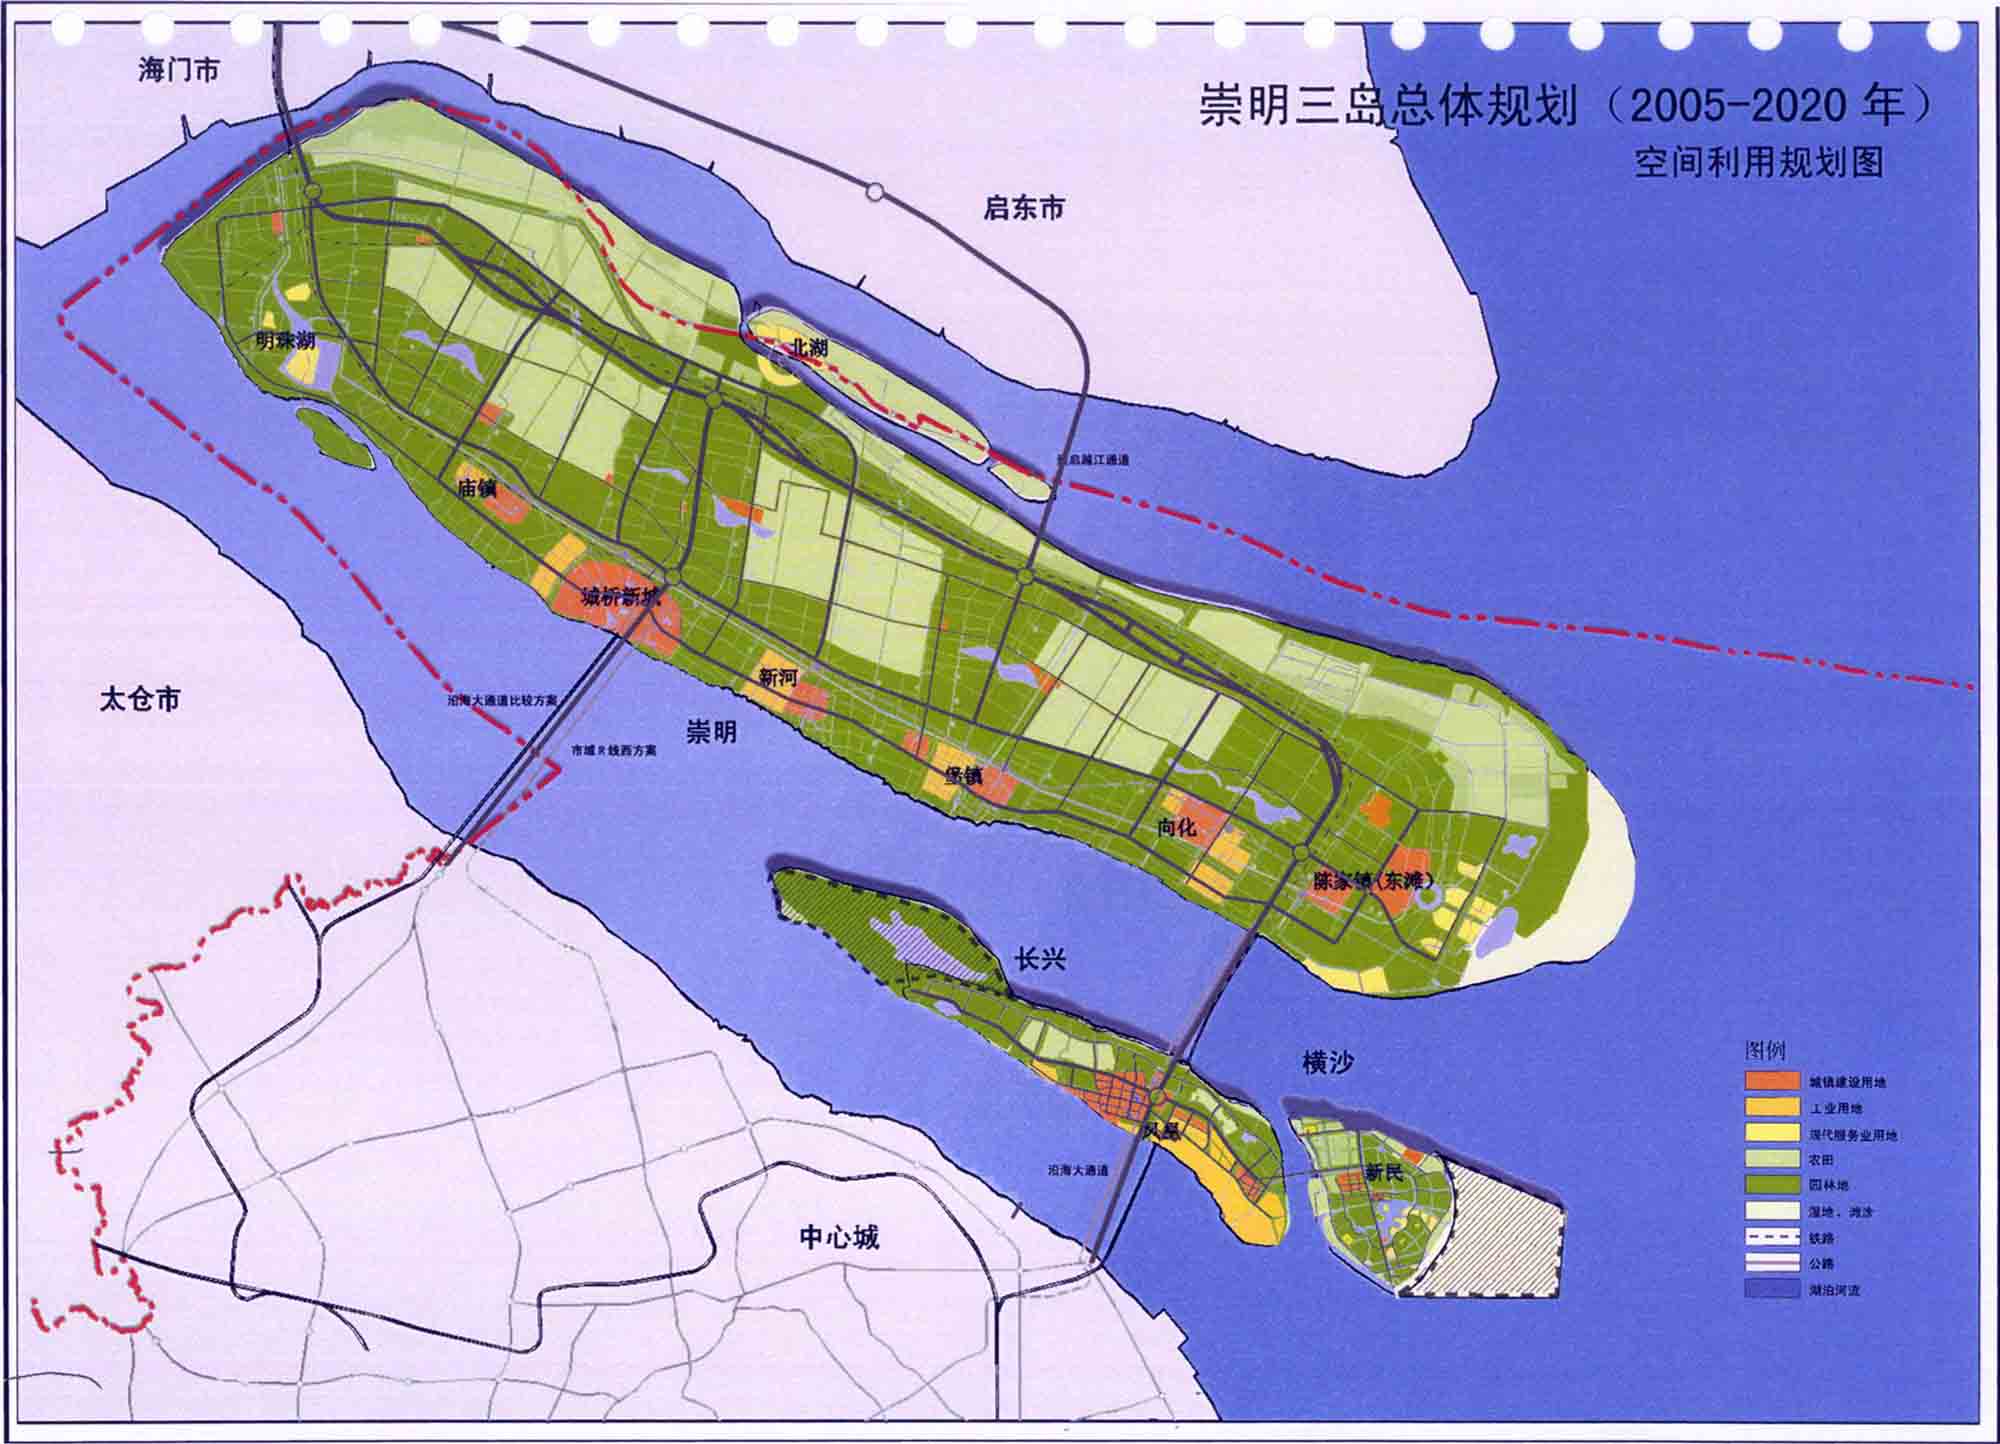 根据《2005至2020年崇明三岛总体规划》,崇明岛主导功能定位为"森林